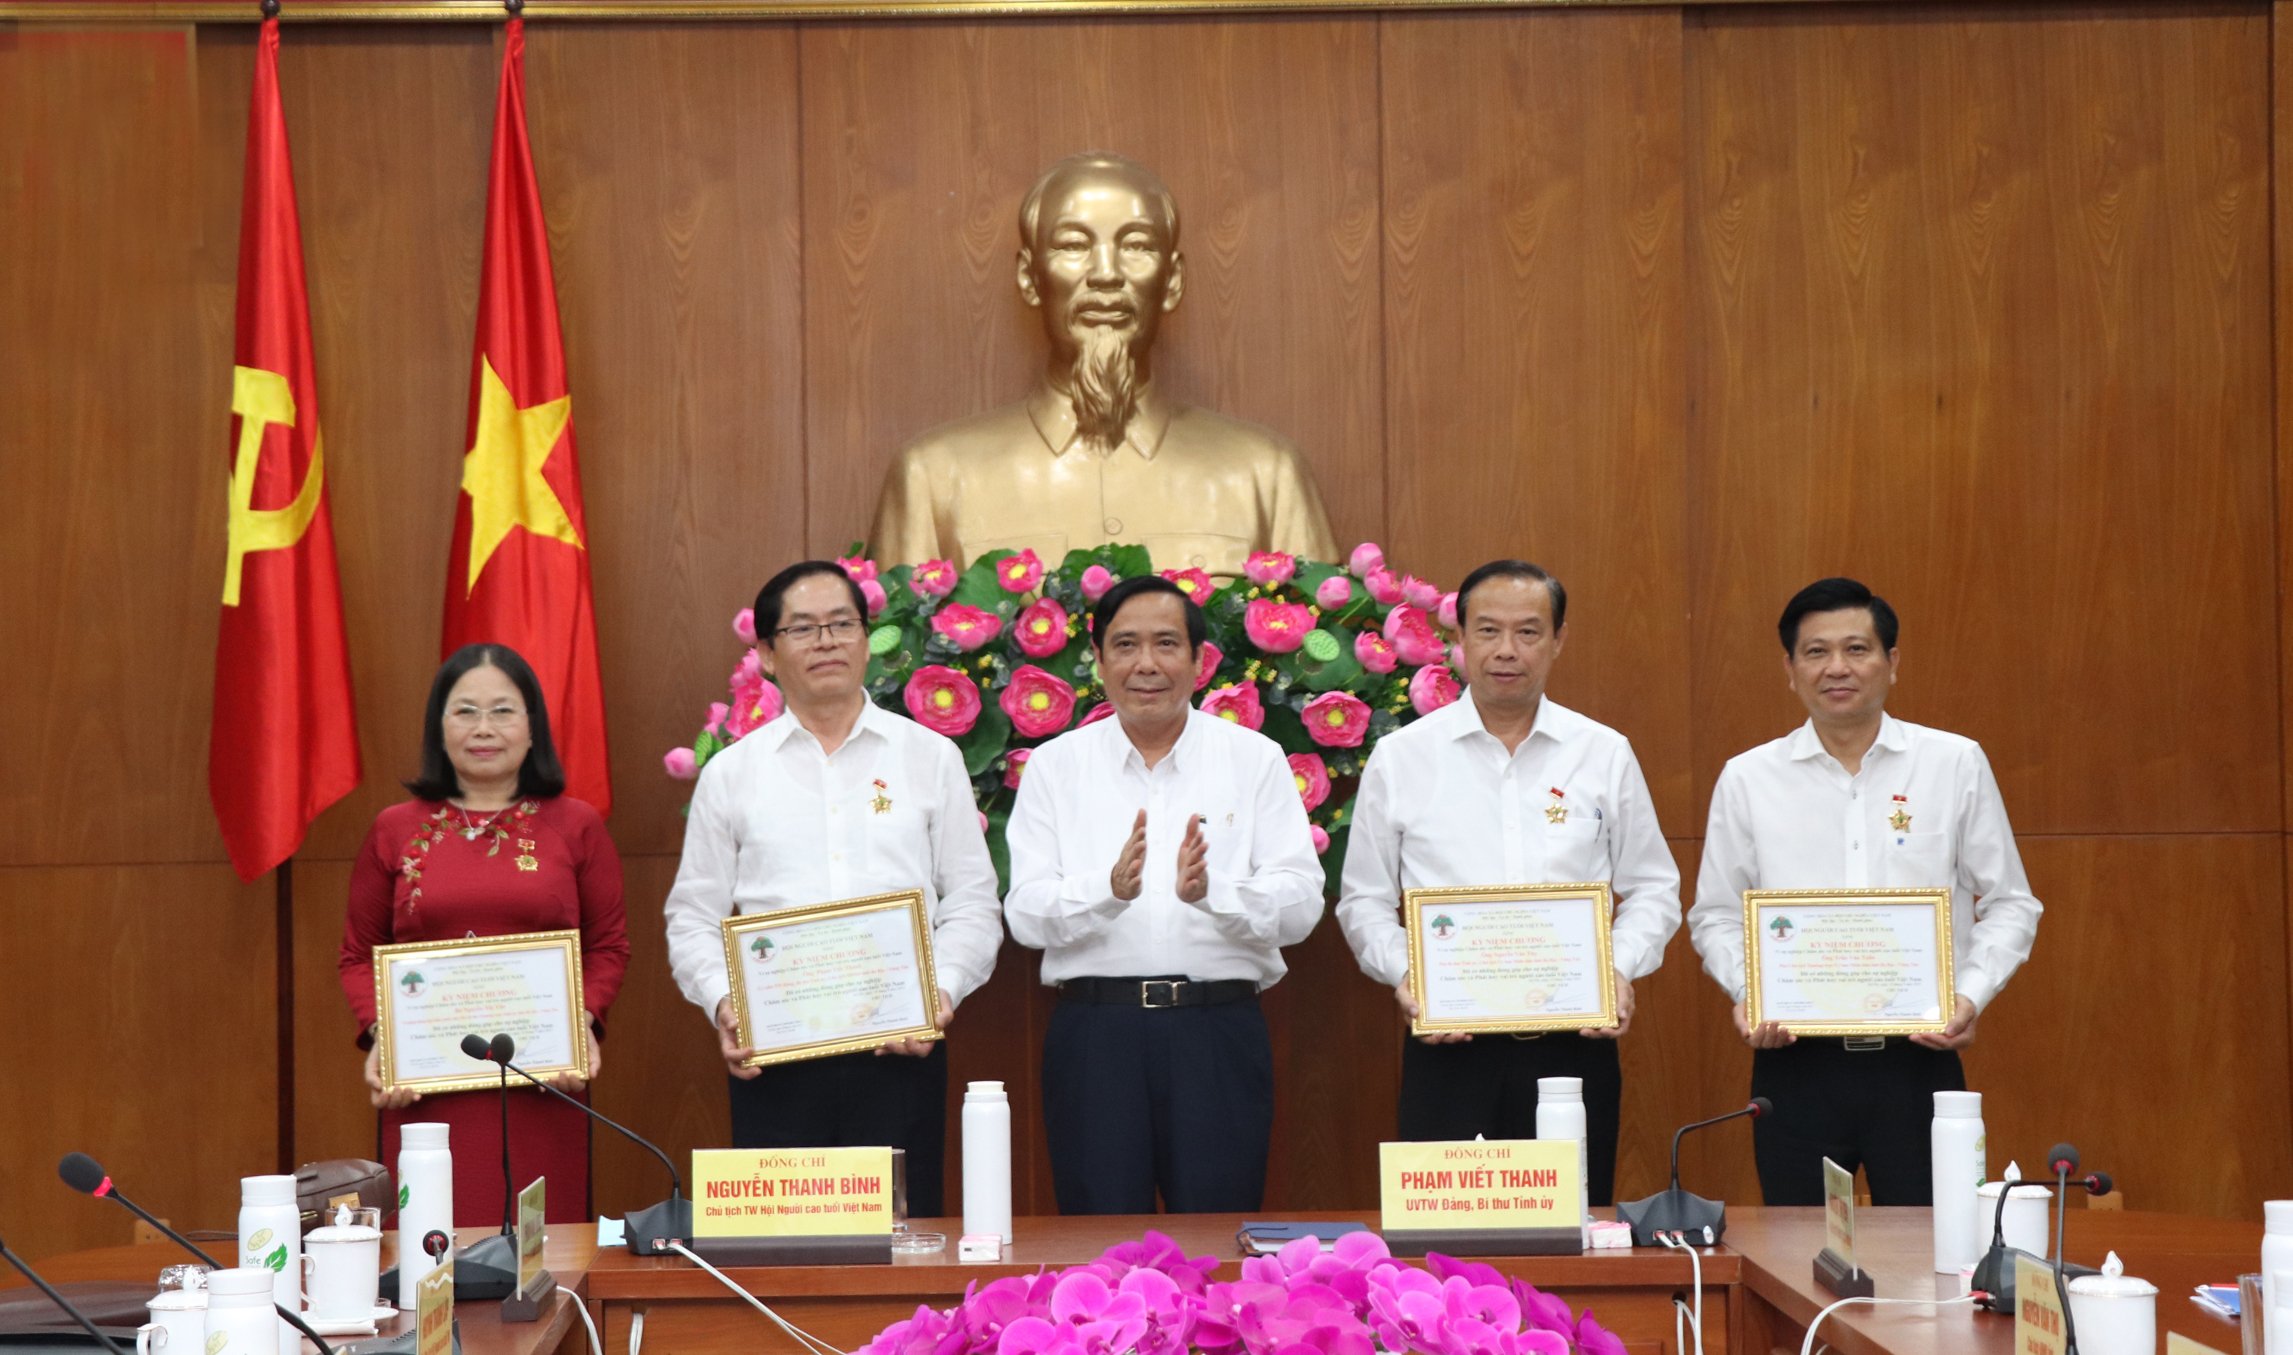 Ông Nguyễn Thanh Bình, Chủ tịch Hội NCT Việt Nam trao Kỷ niệm chương “Vì sự nghiệp chăm sóc và phát huy vai trò NCT” cho các cá nhân của tỉnh.